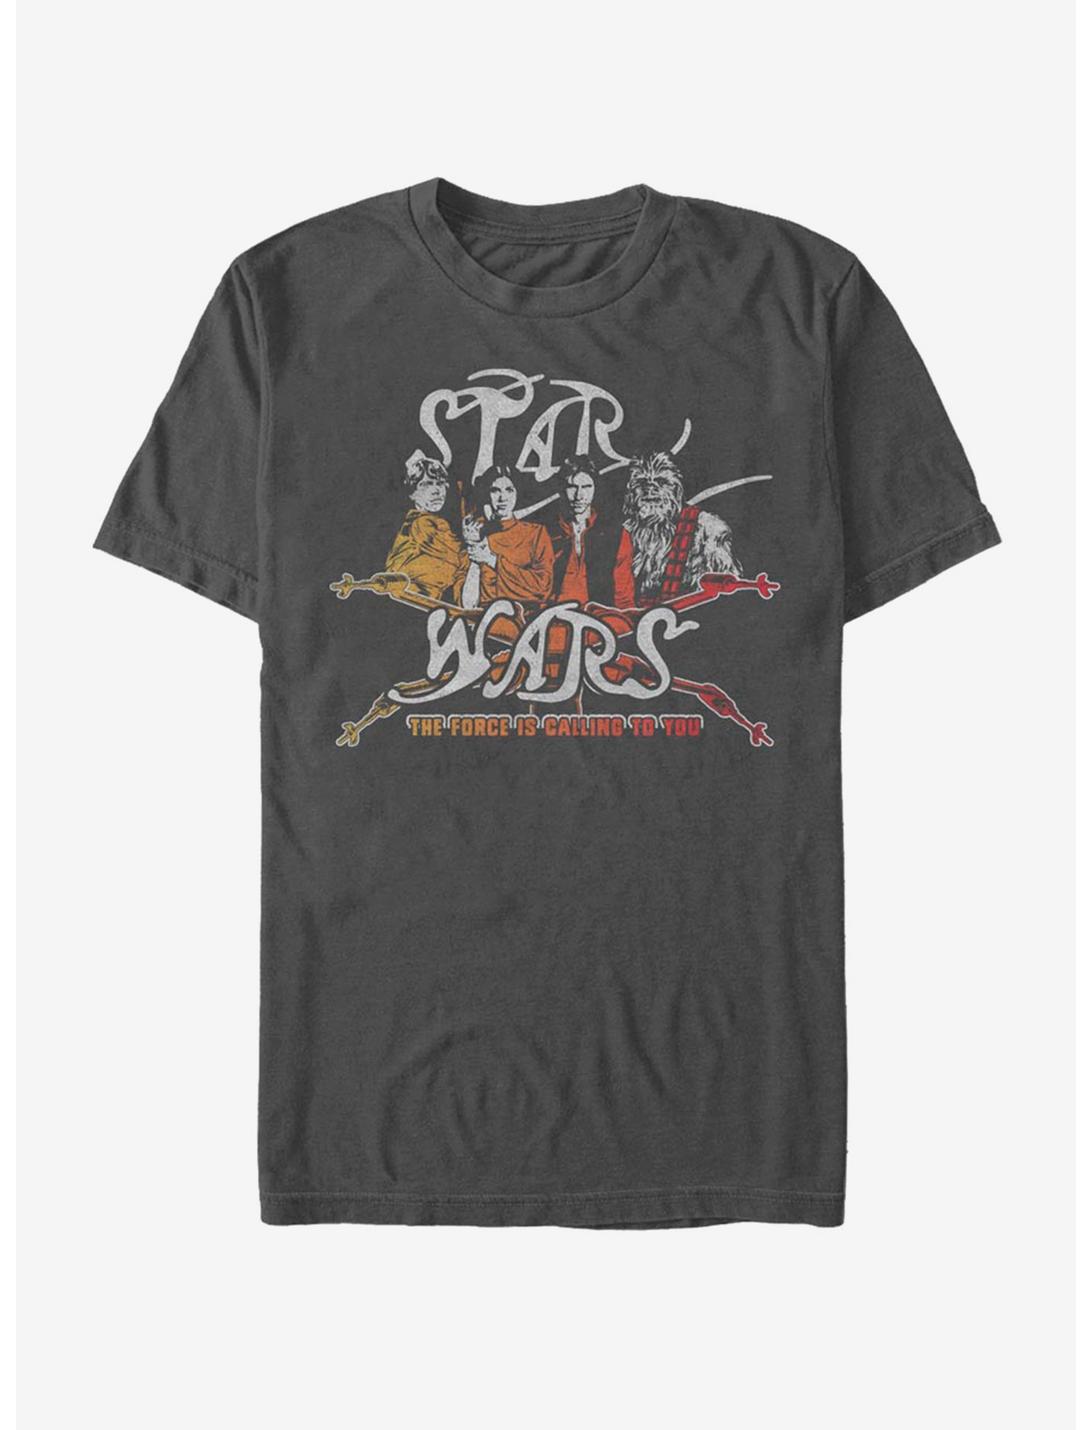 Star Wars Vintage Rock Star Wars T-Shirt, CHARCOAL, hi-res